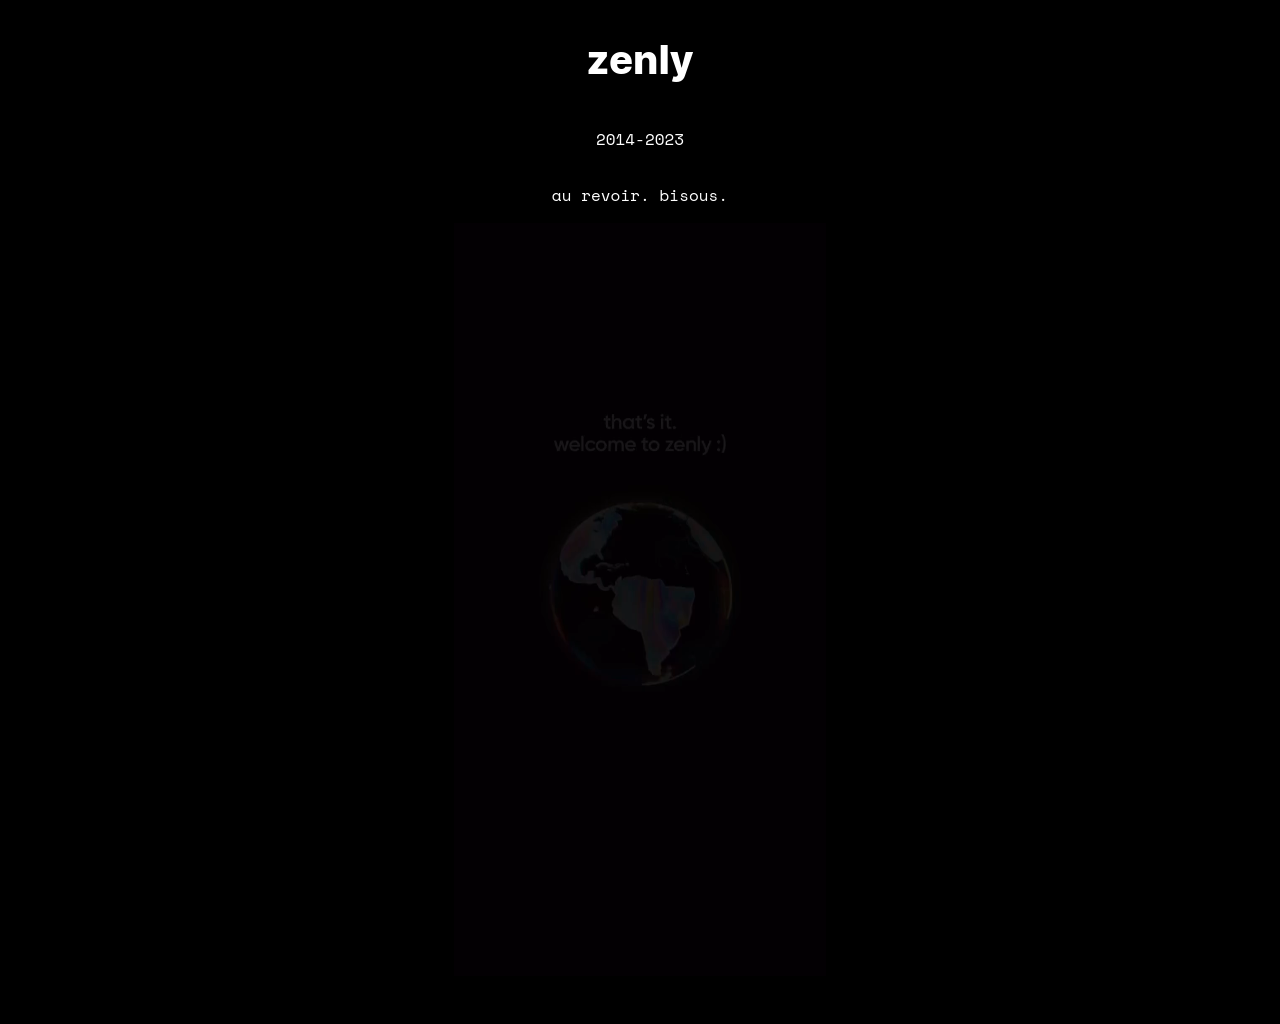 zen.ly